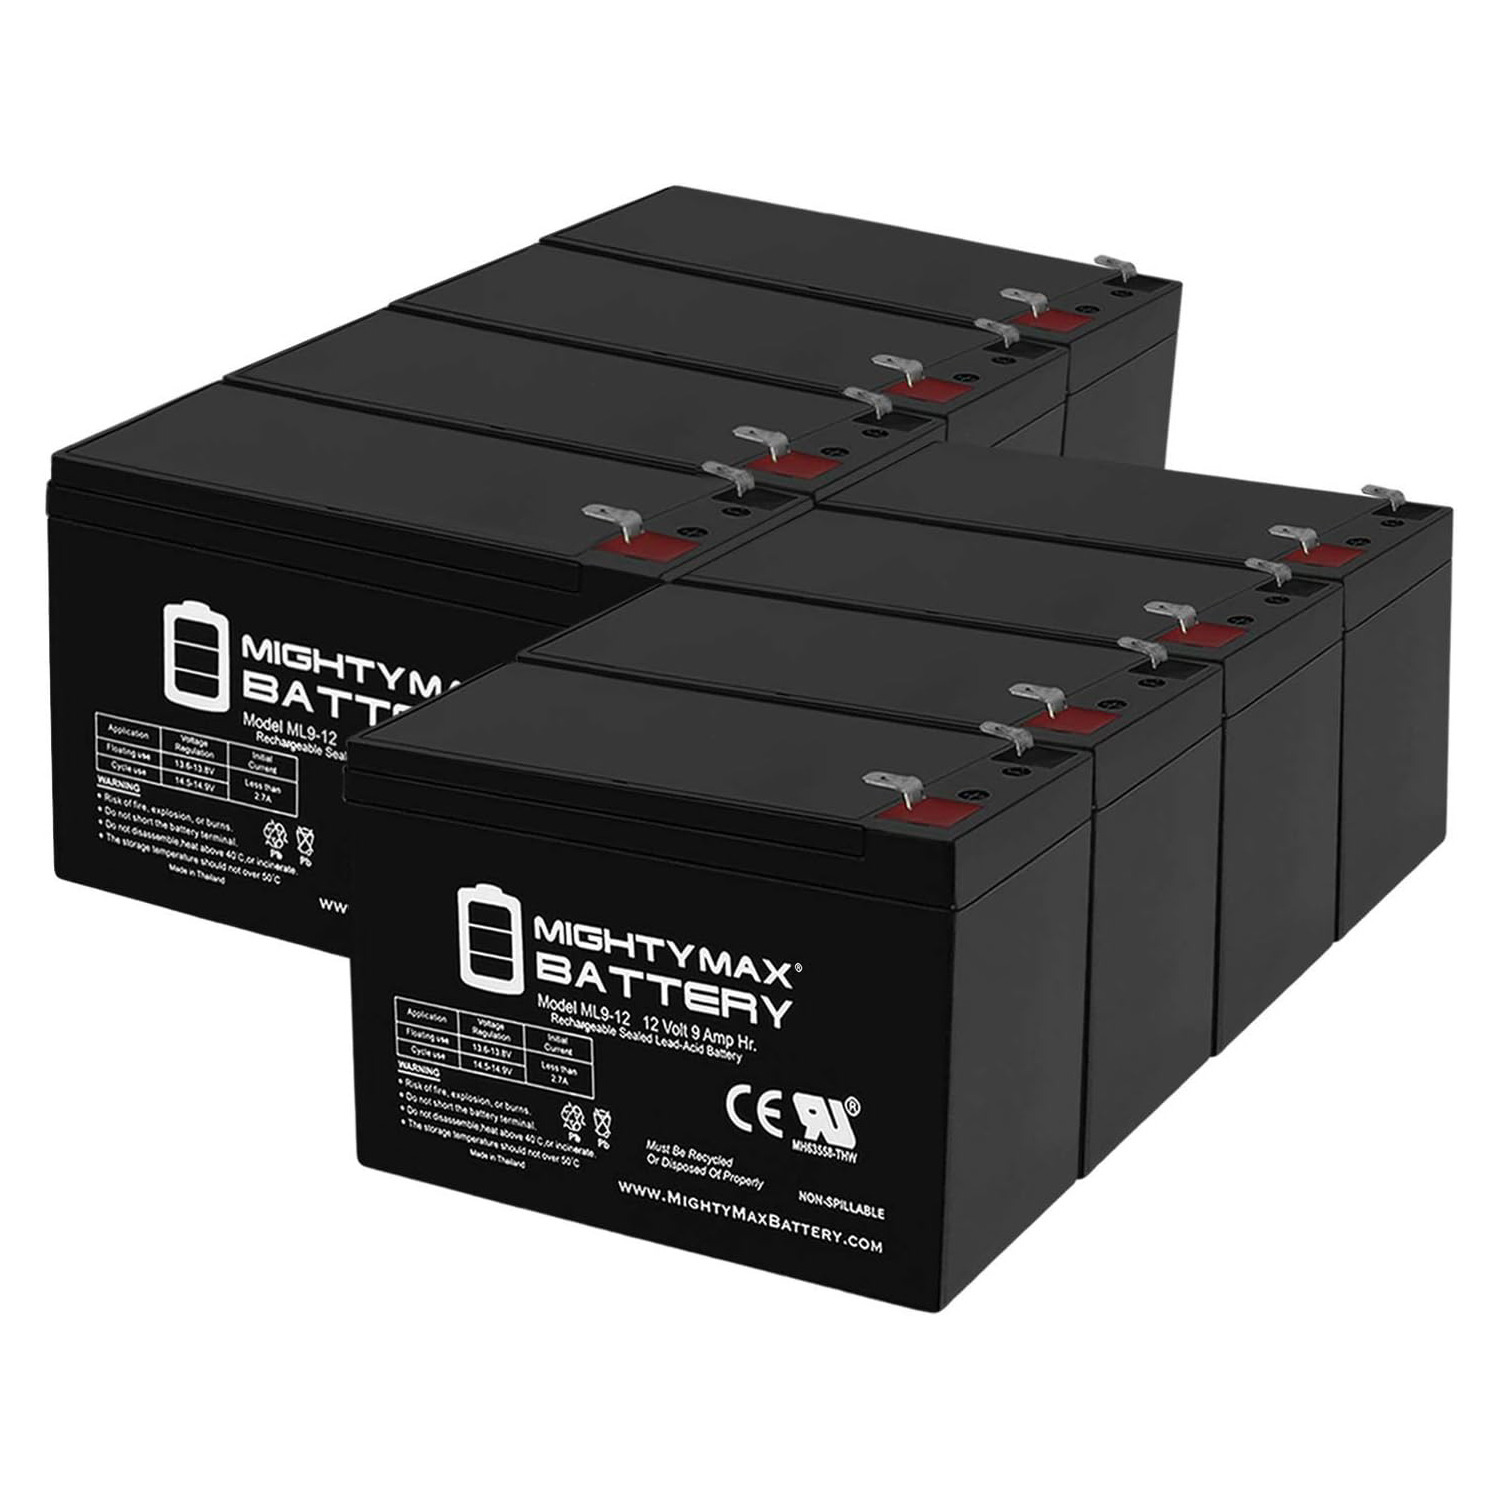 Altronix AL300ULMR 12V, 9Ah Lead Acid Battery - 8 Pack